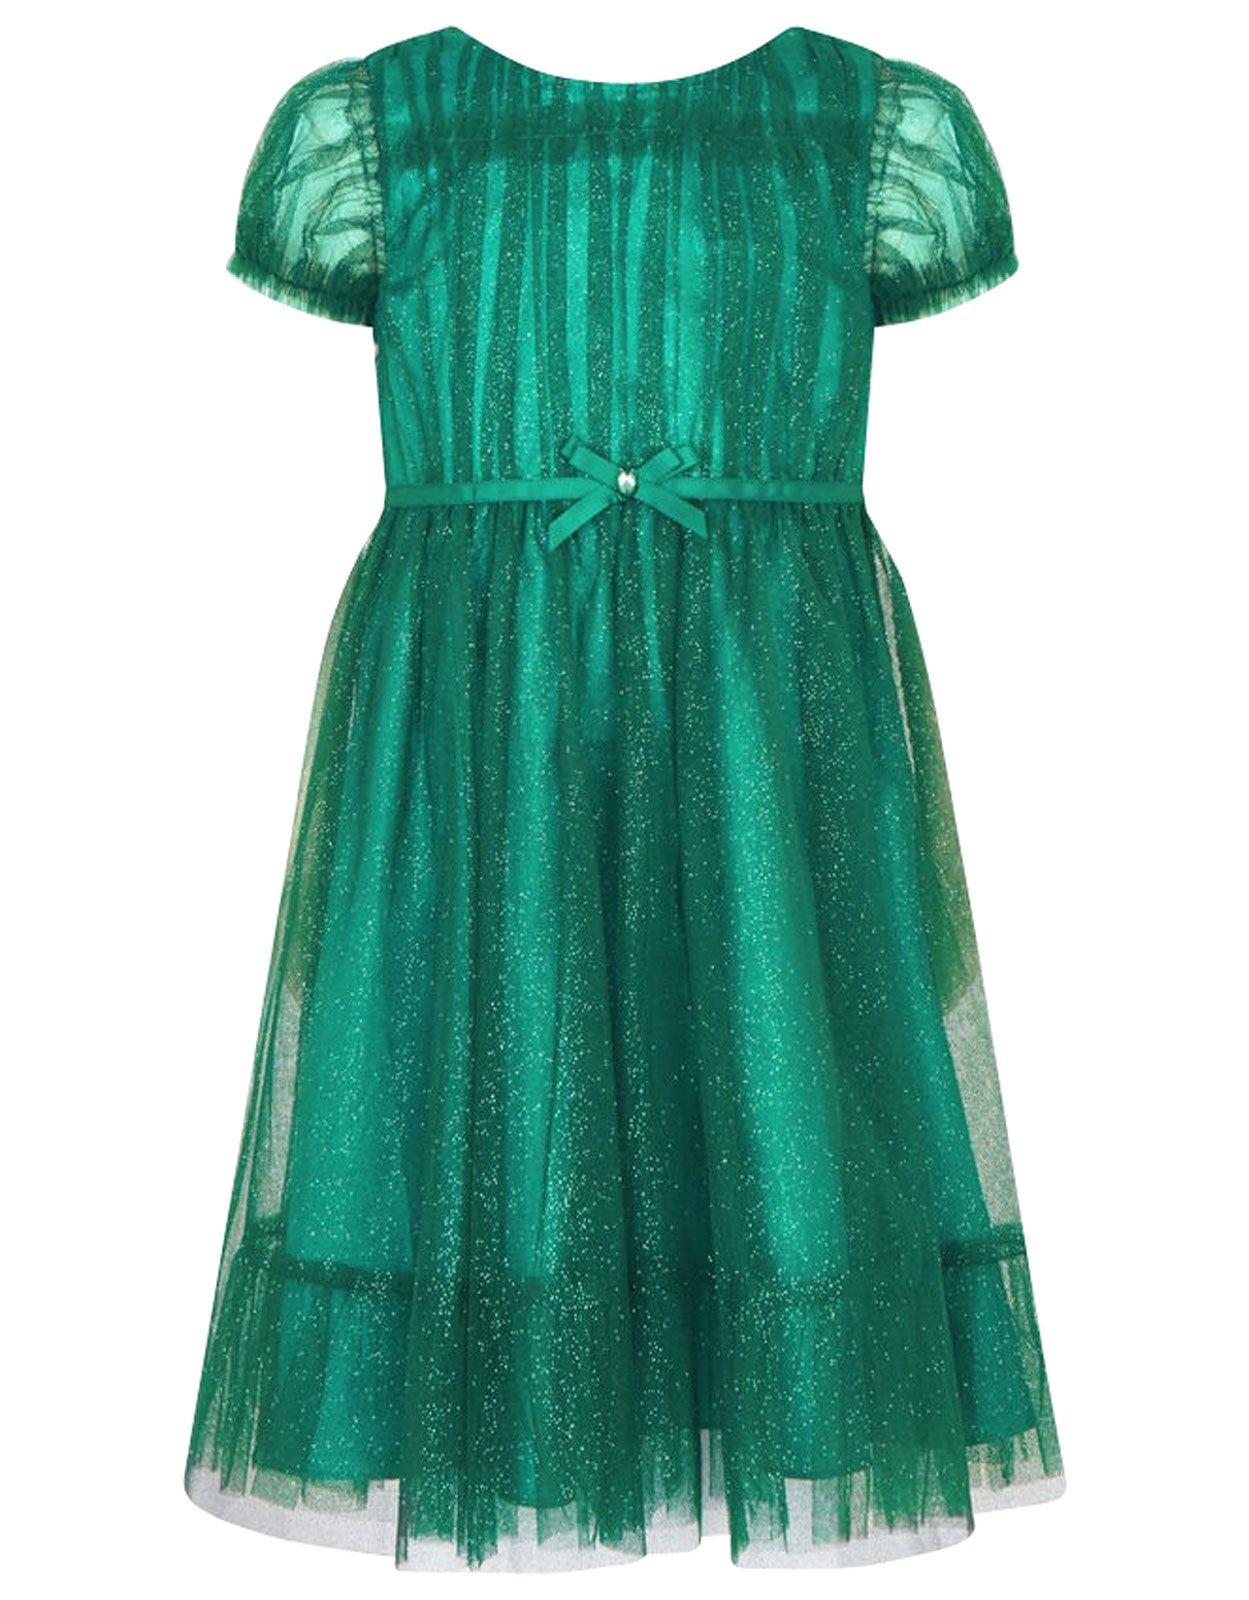 Isla Glitter Green Dress